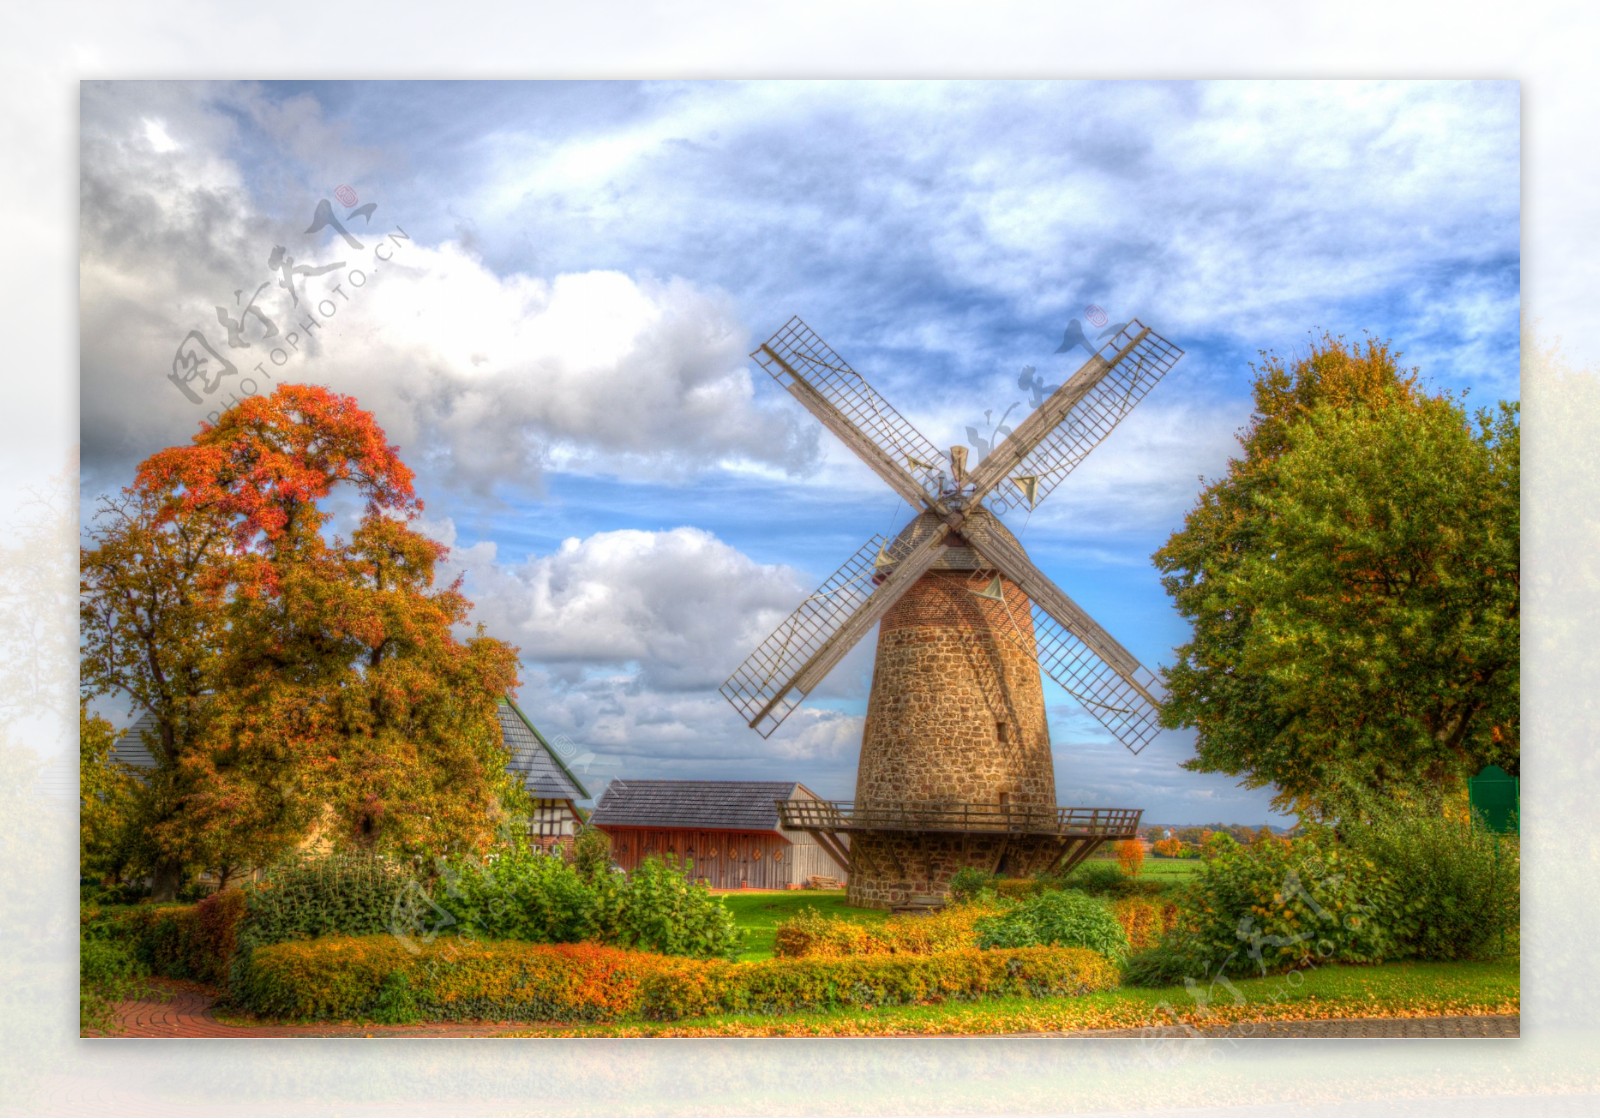 风景图荷兰风车